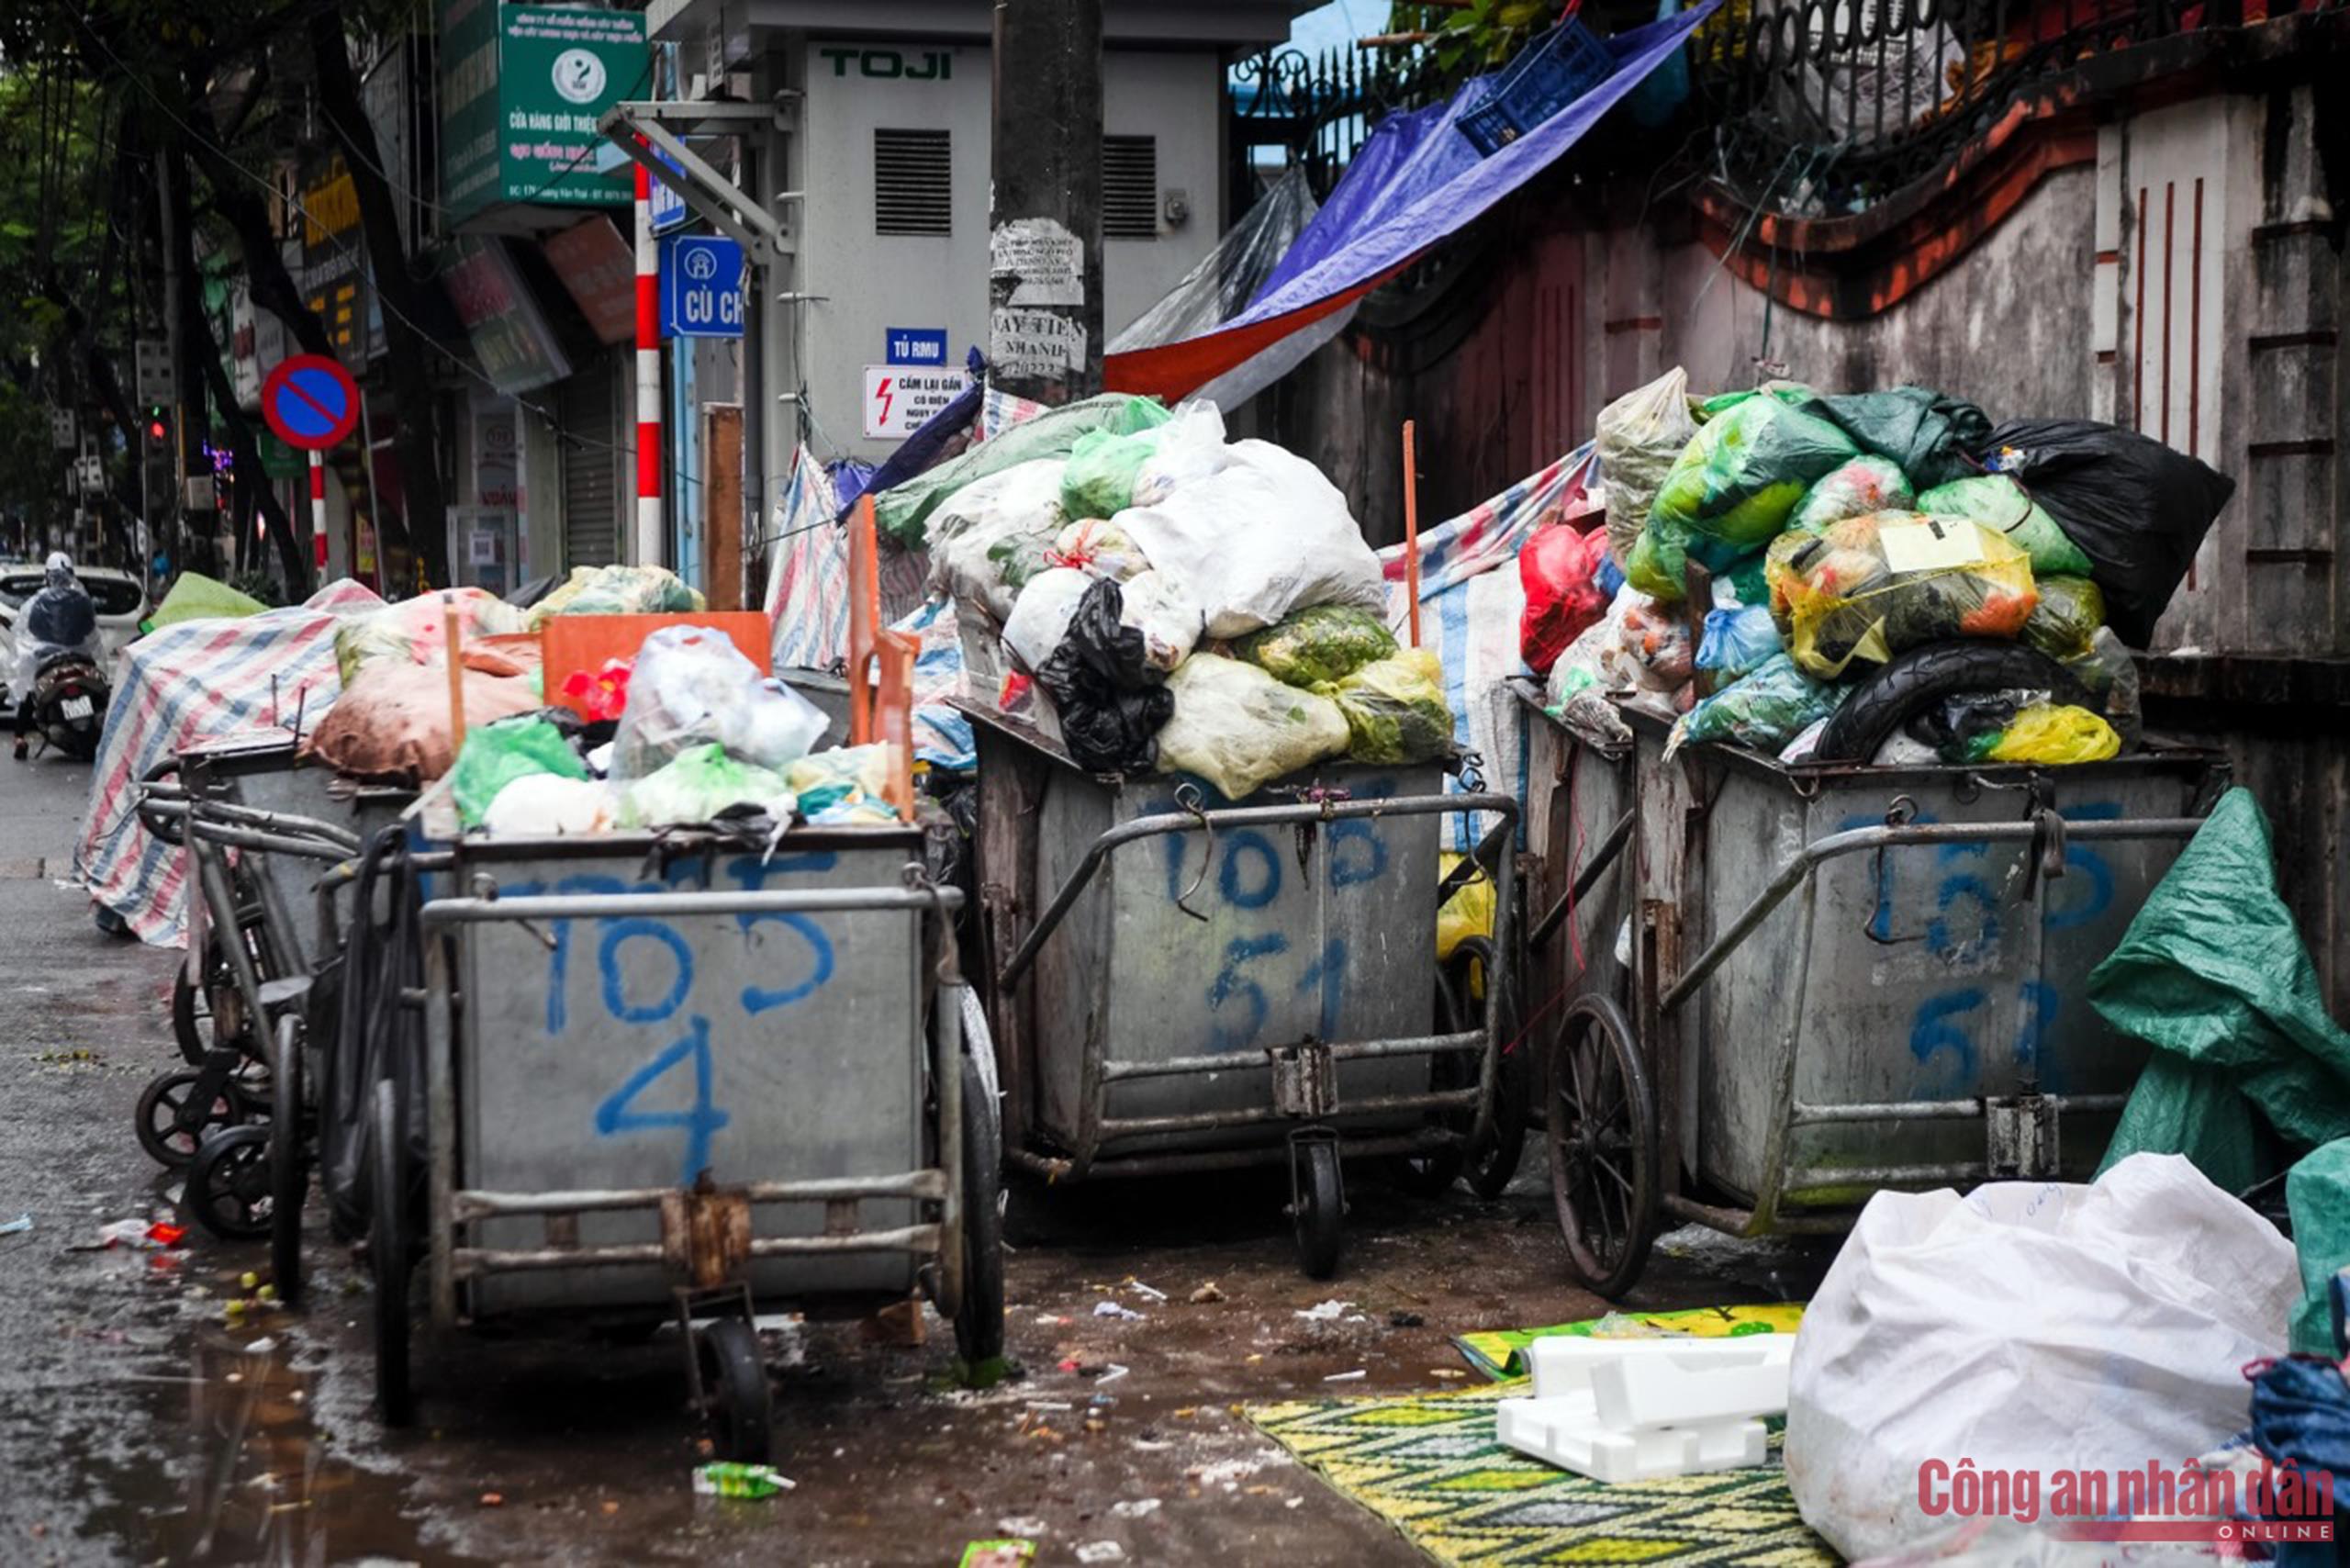 Xem hình ảnh liên quan đến xe rác thải để ý thức về việc xử lý rác thải một cách bảo vệ môi trường và khí hậu. Mỗi người chúng ta đều có trách nhiệm để giữ sạch và gìn giữ môi trường sống.